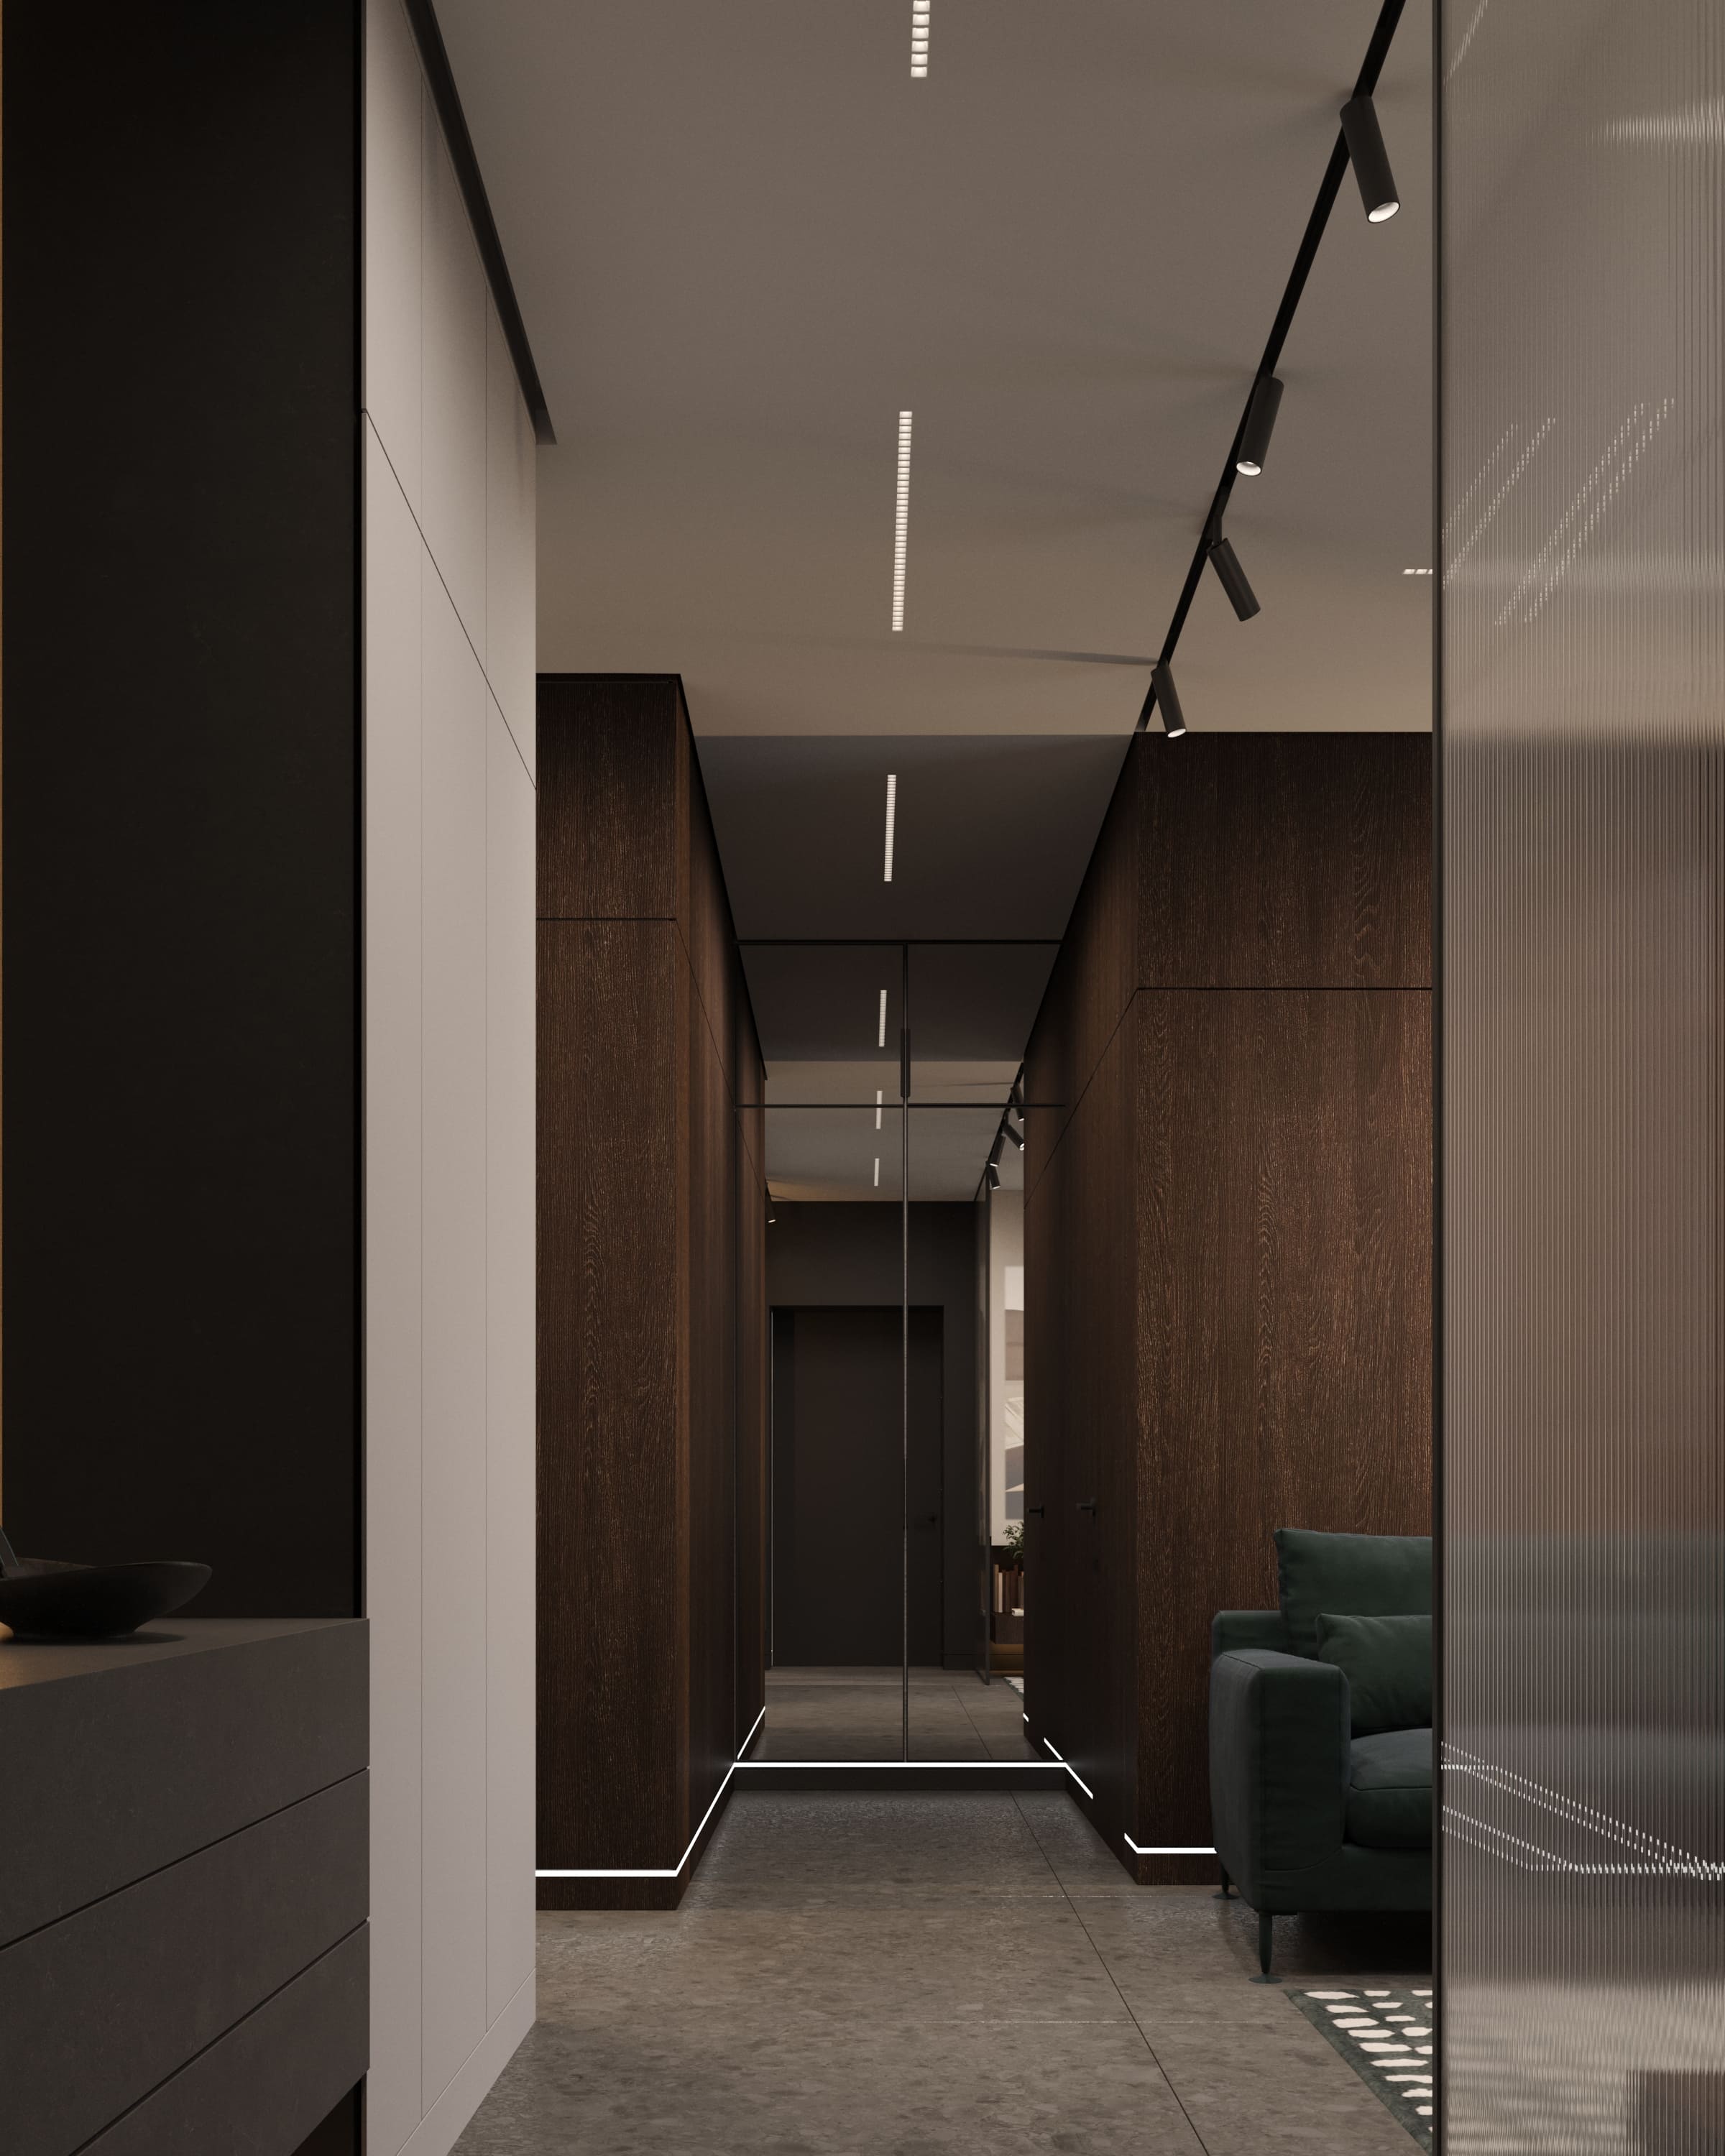 Дизайн интерьера квартиры в современном стиле | Intuition Design